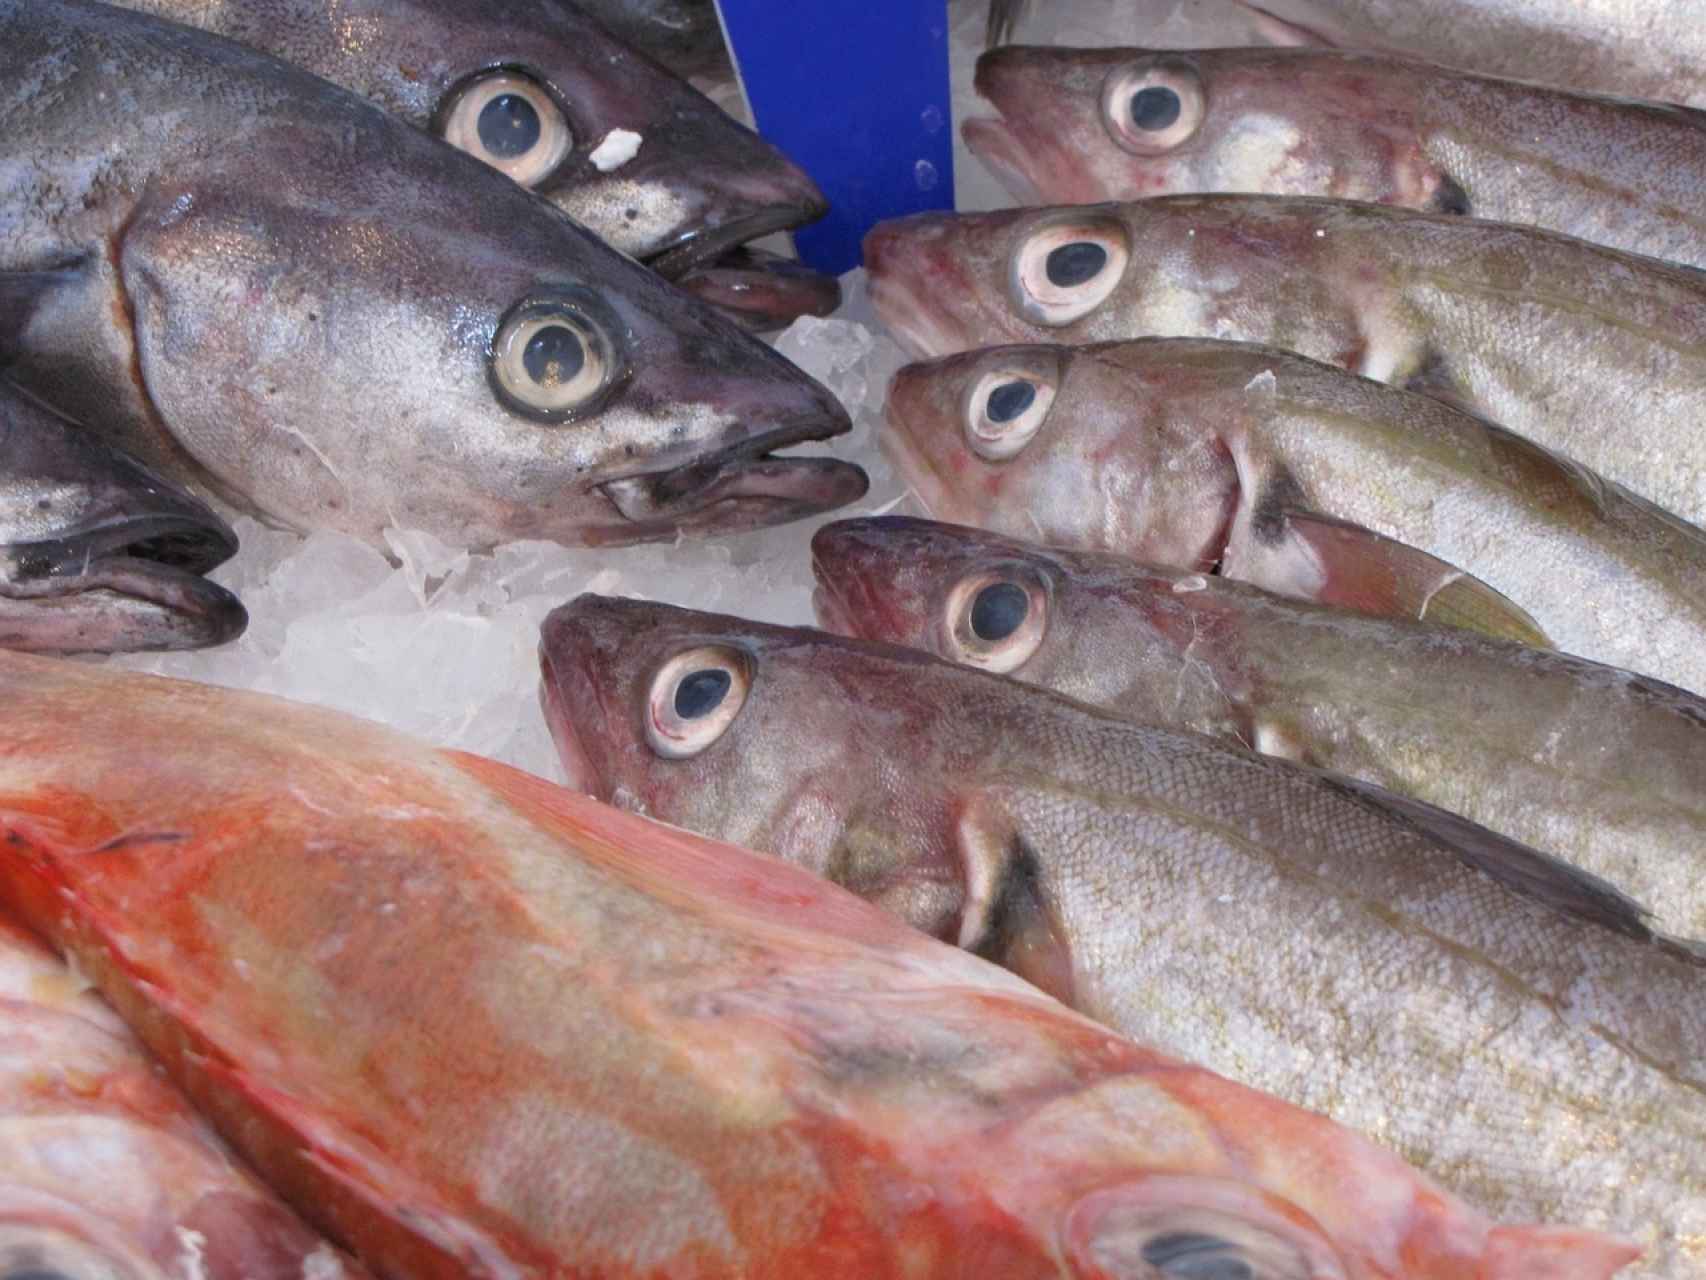 Cómo saber si un pescado es fresco? ¡Presta atención!